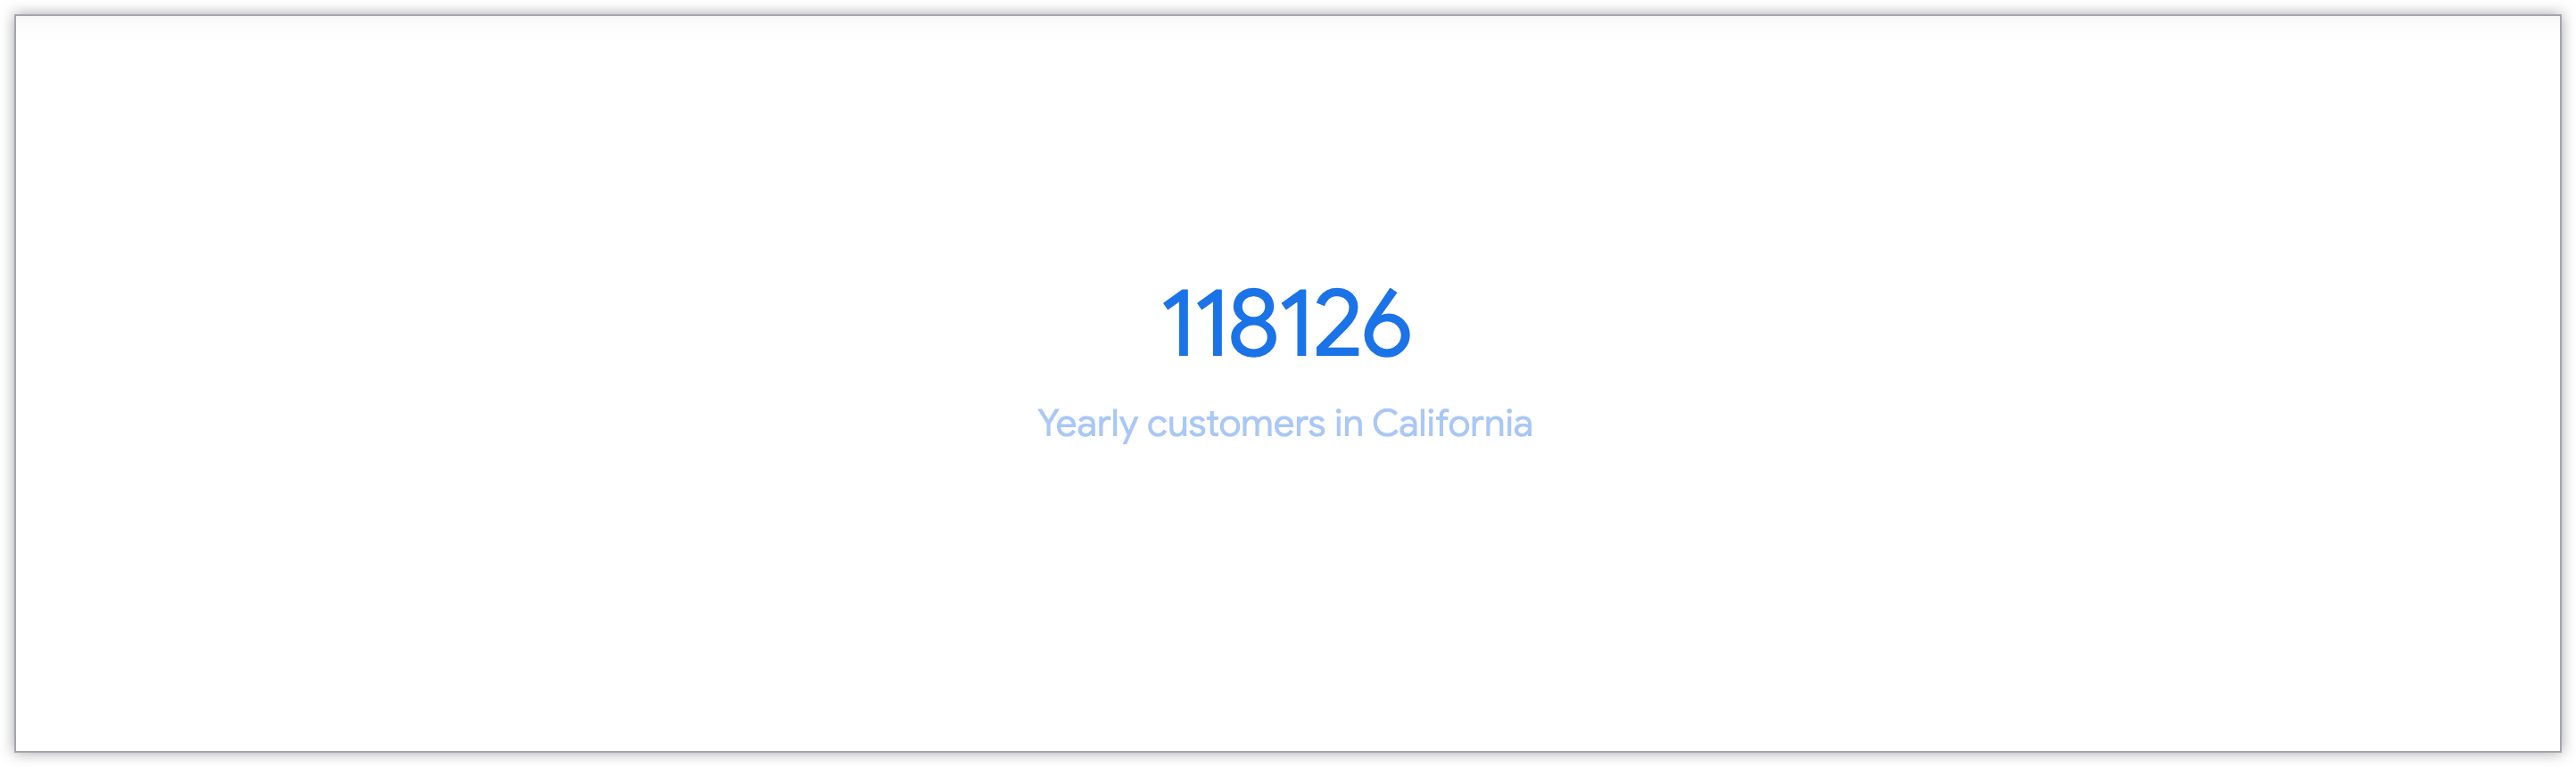 Gráfico de valor único mostrando o número de clientes anuais da Califórnia.